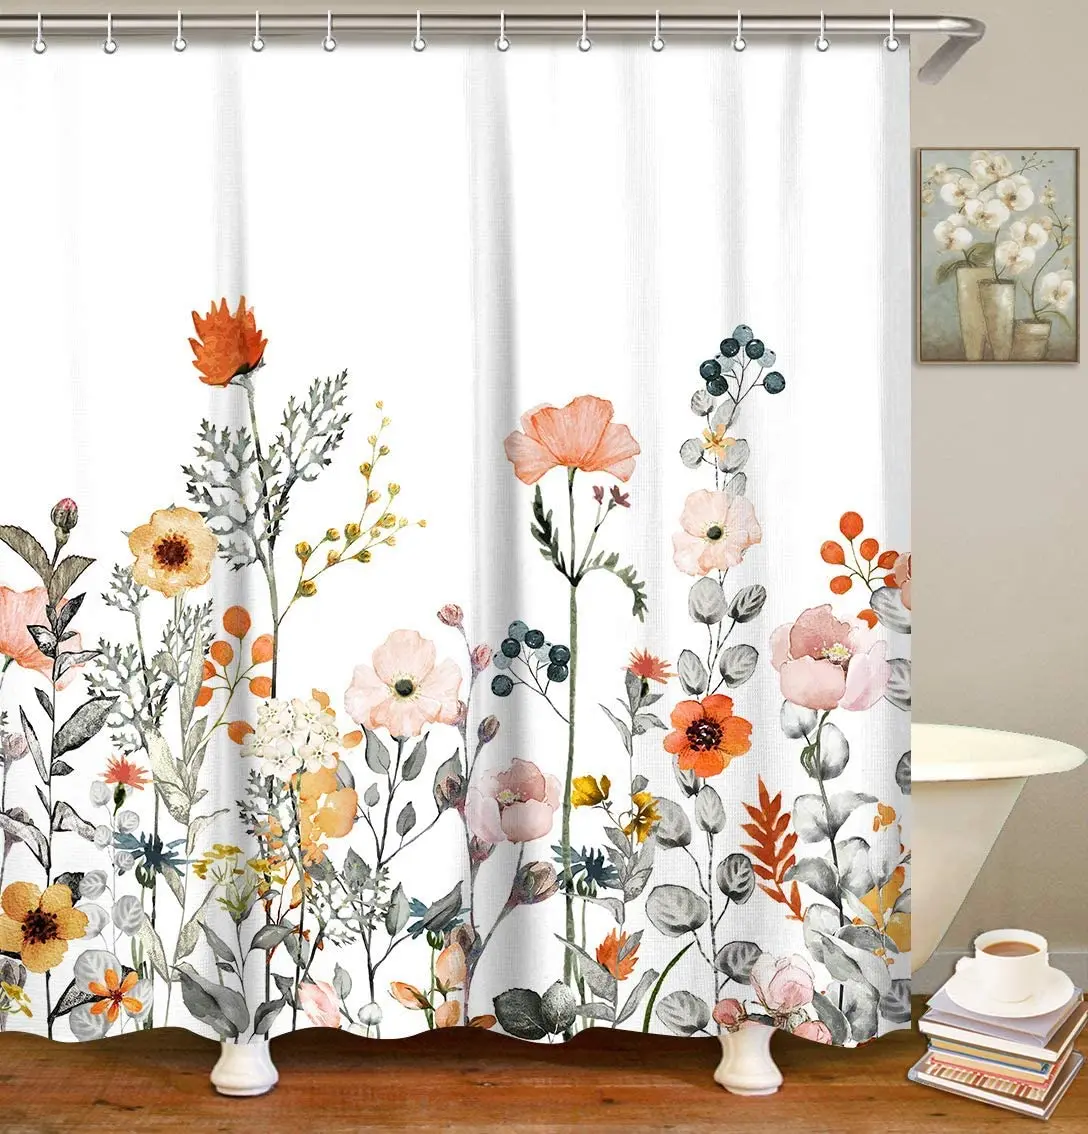 

Набор цветочных занавесок для душа с крючками, декоративные занавески для ванной, разноцветные ботанические цветы и листья